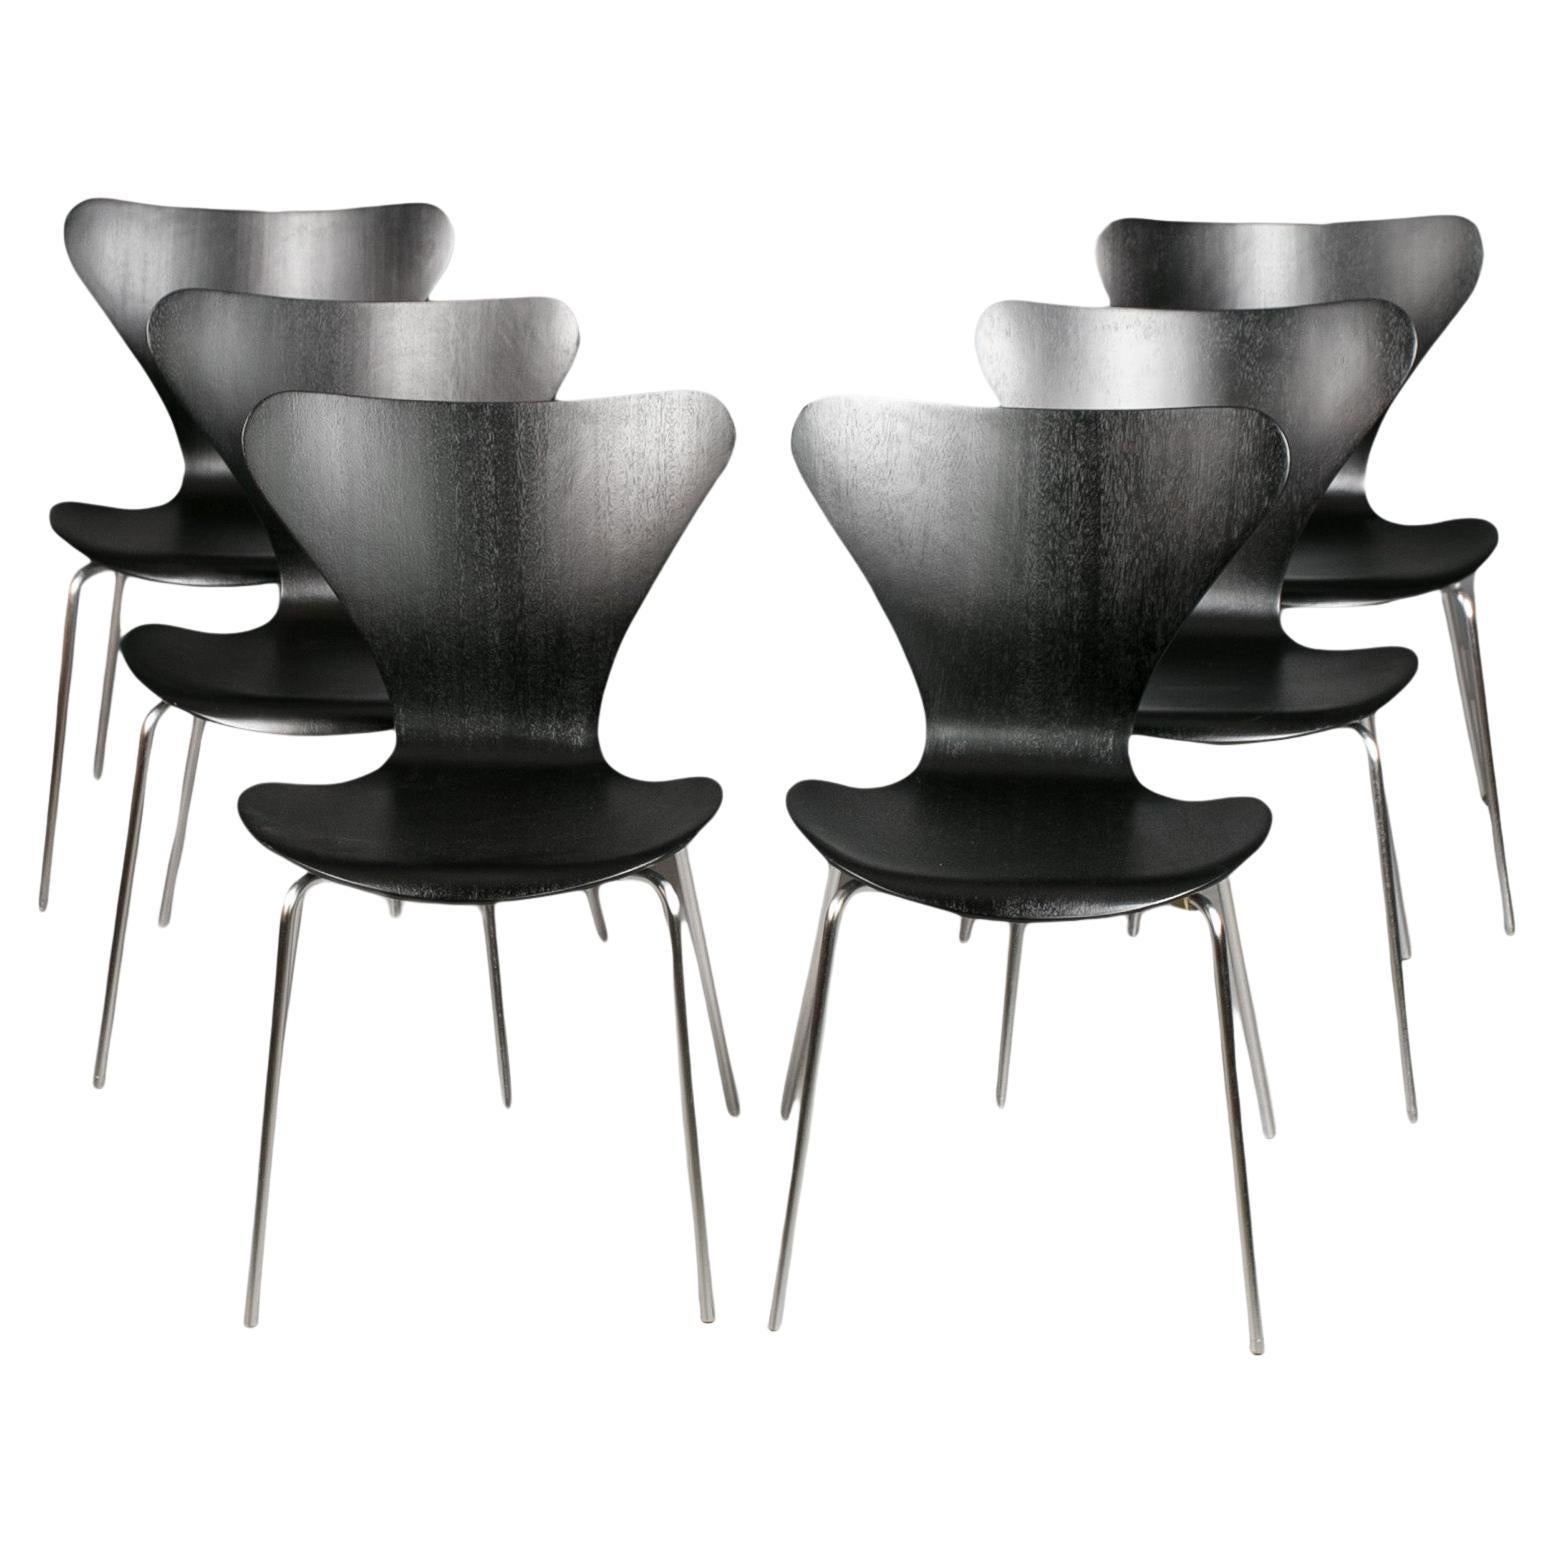 Ensemble de 6 chaises de salle à manger en noir, Series7 par Arne Jacobsen, Fritz Hansen, années 1950